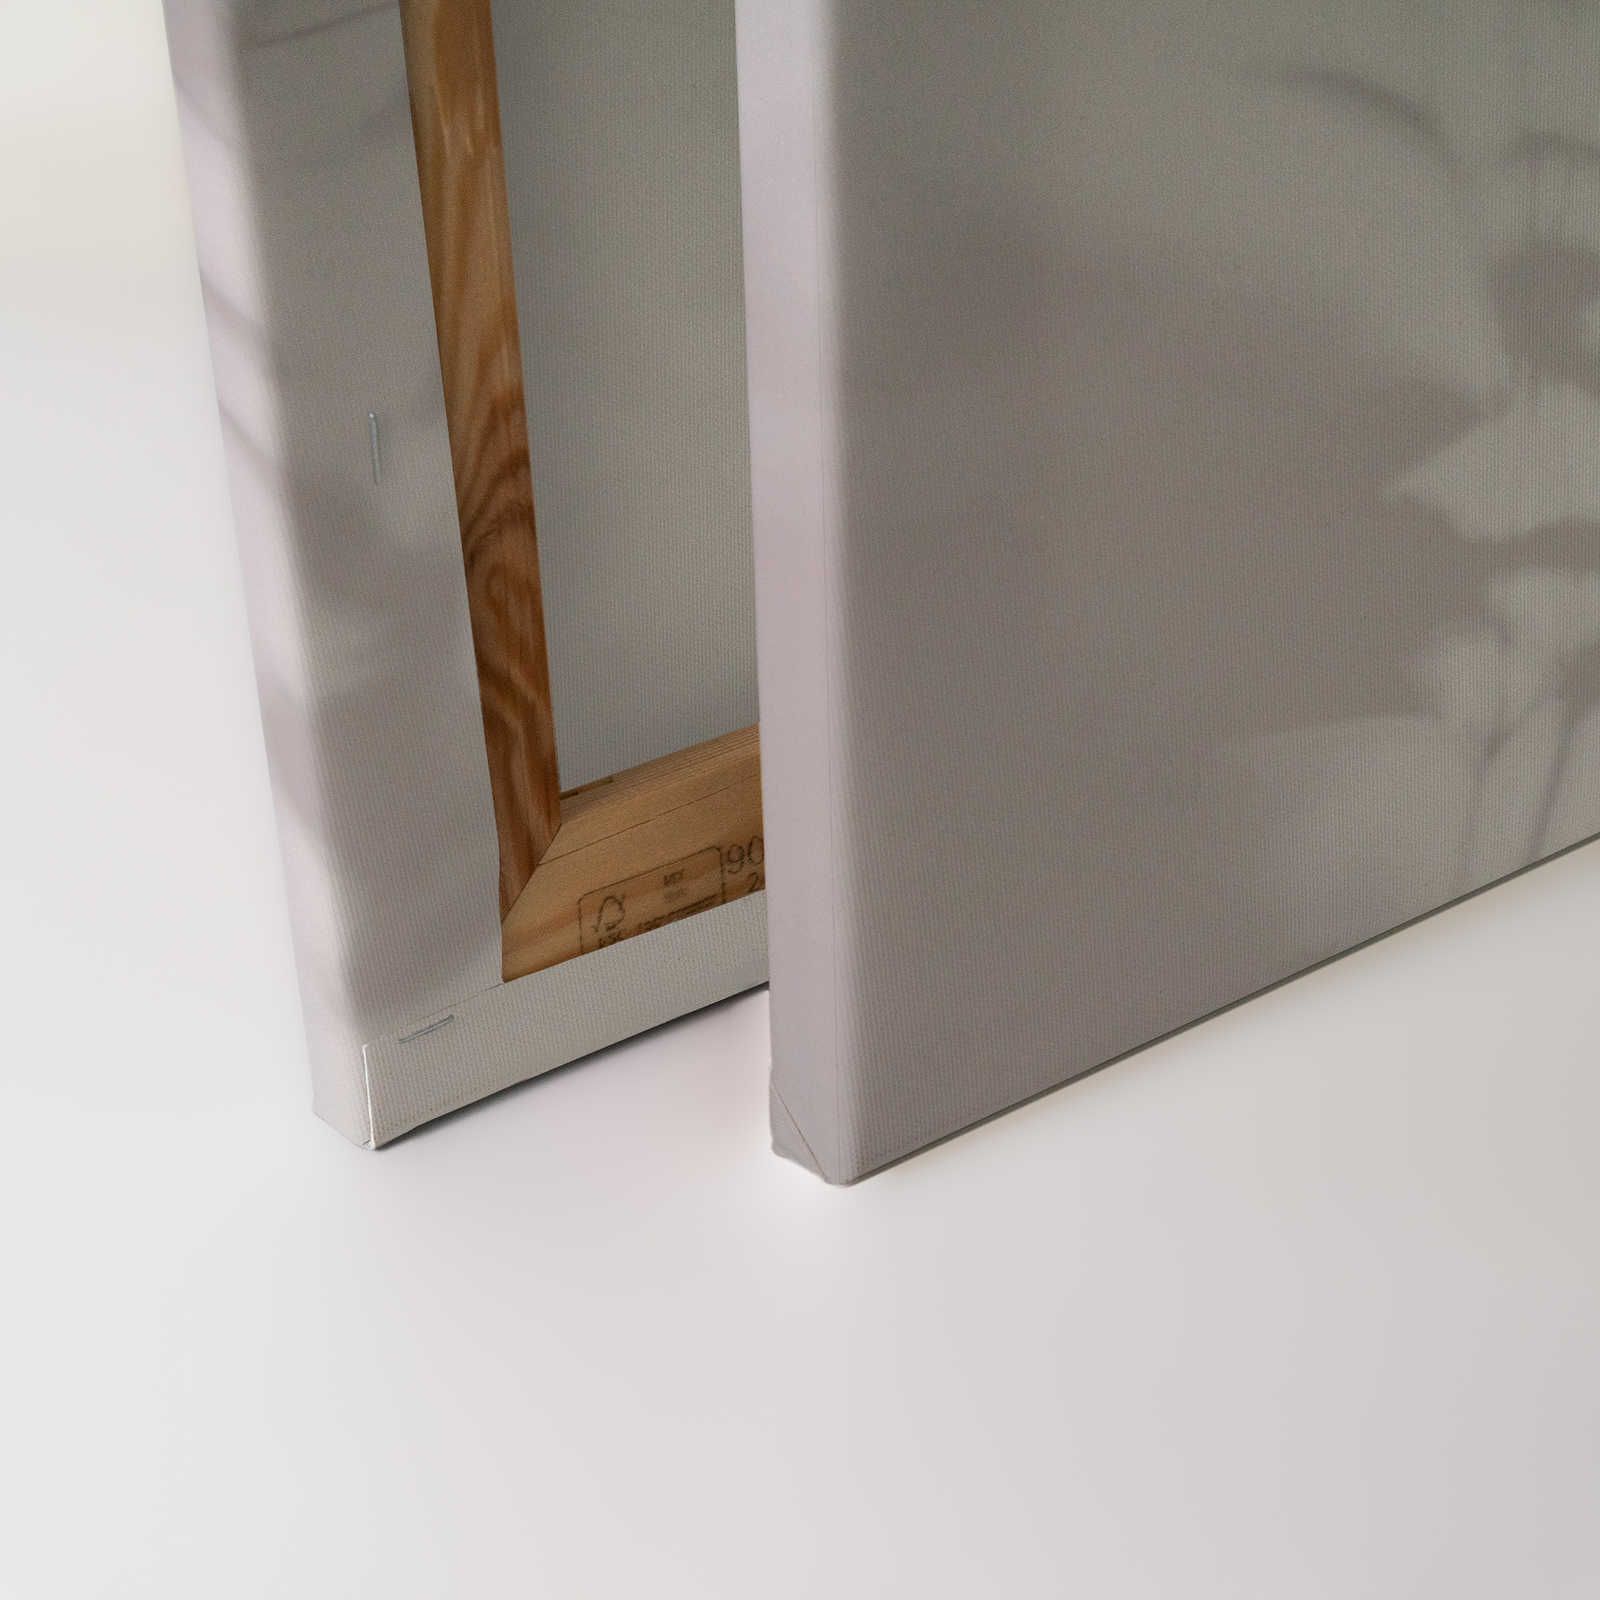             Shadow Room 2 - Toile naturelle Gris & Blanc, design délavé - 0,90 m x 0,60 m
        